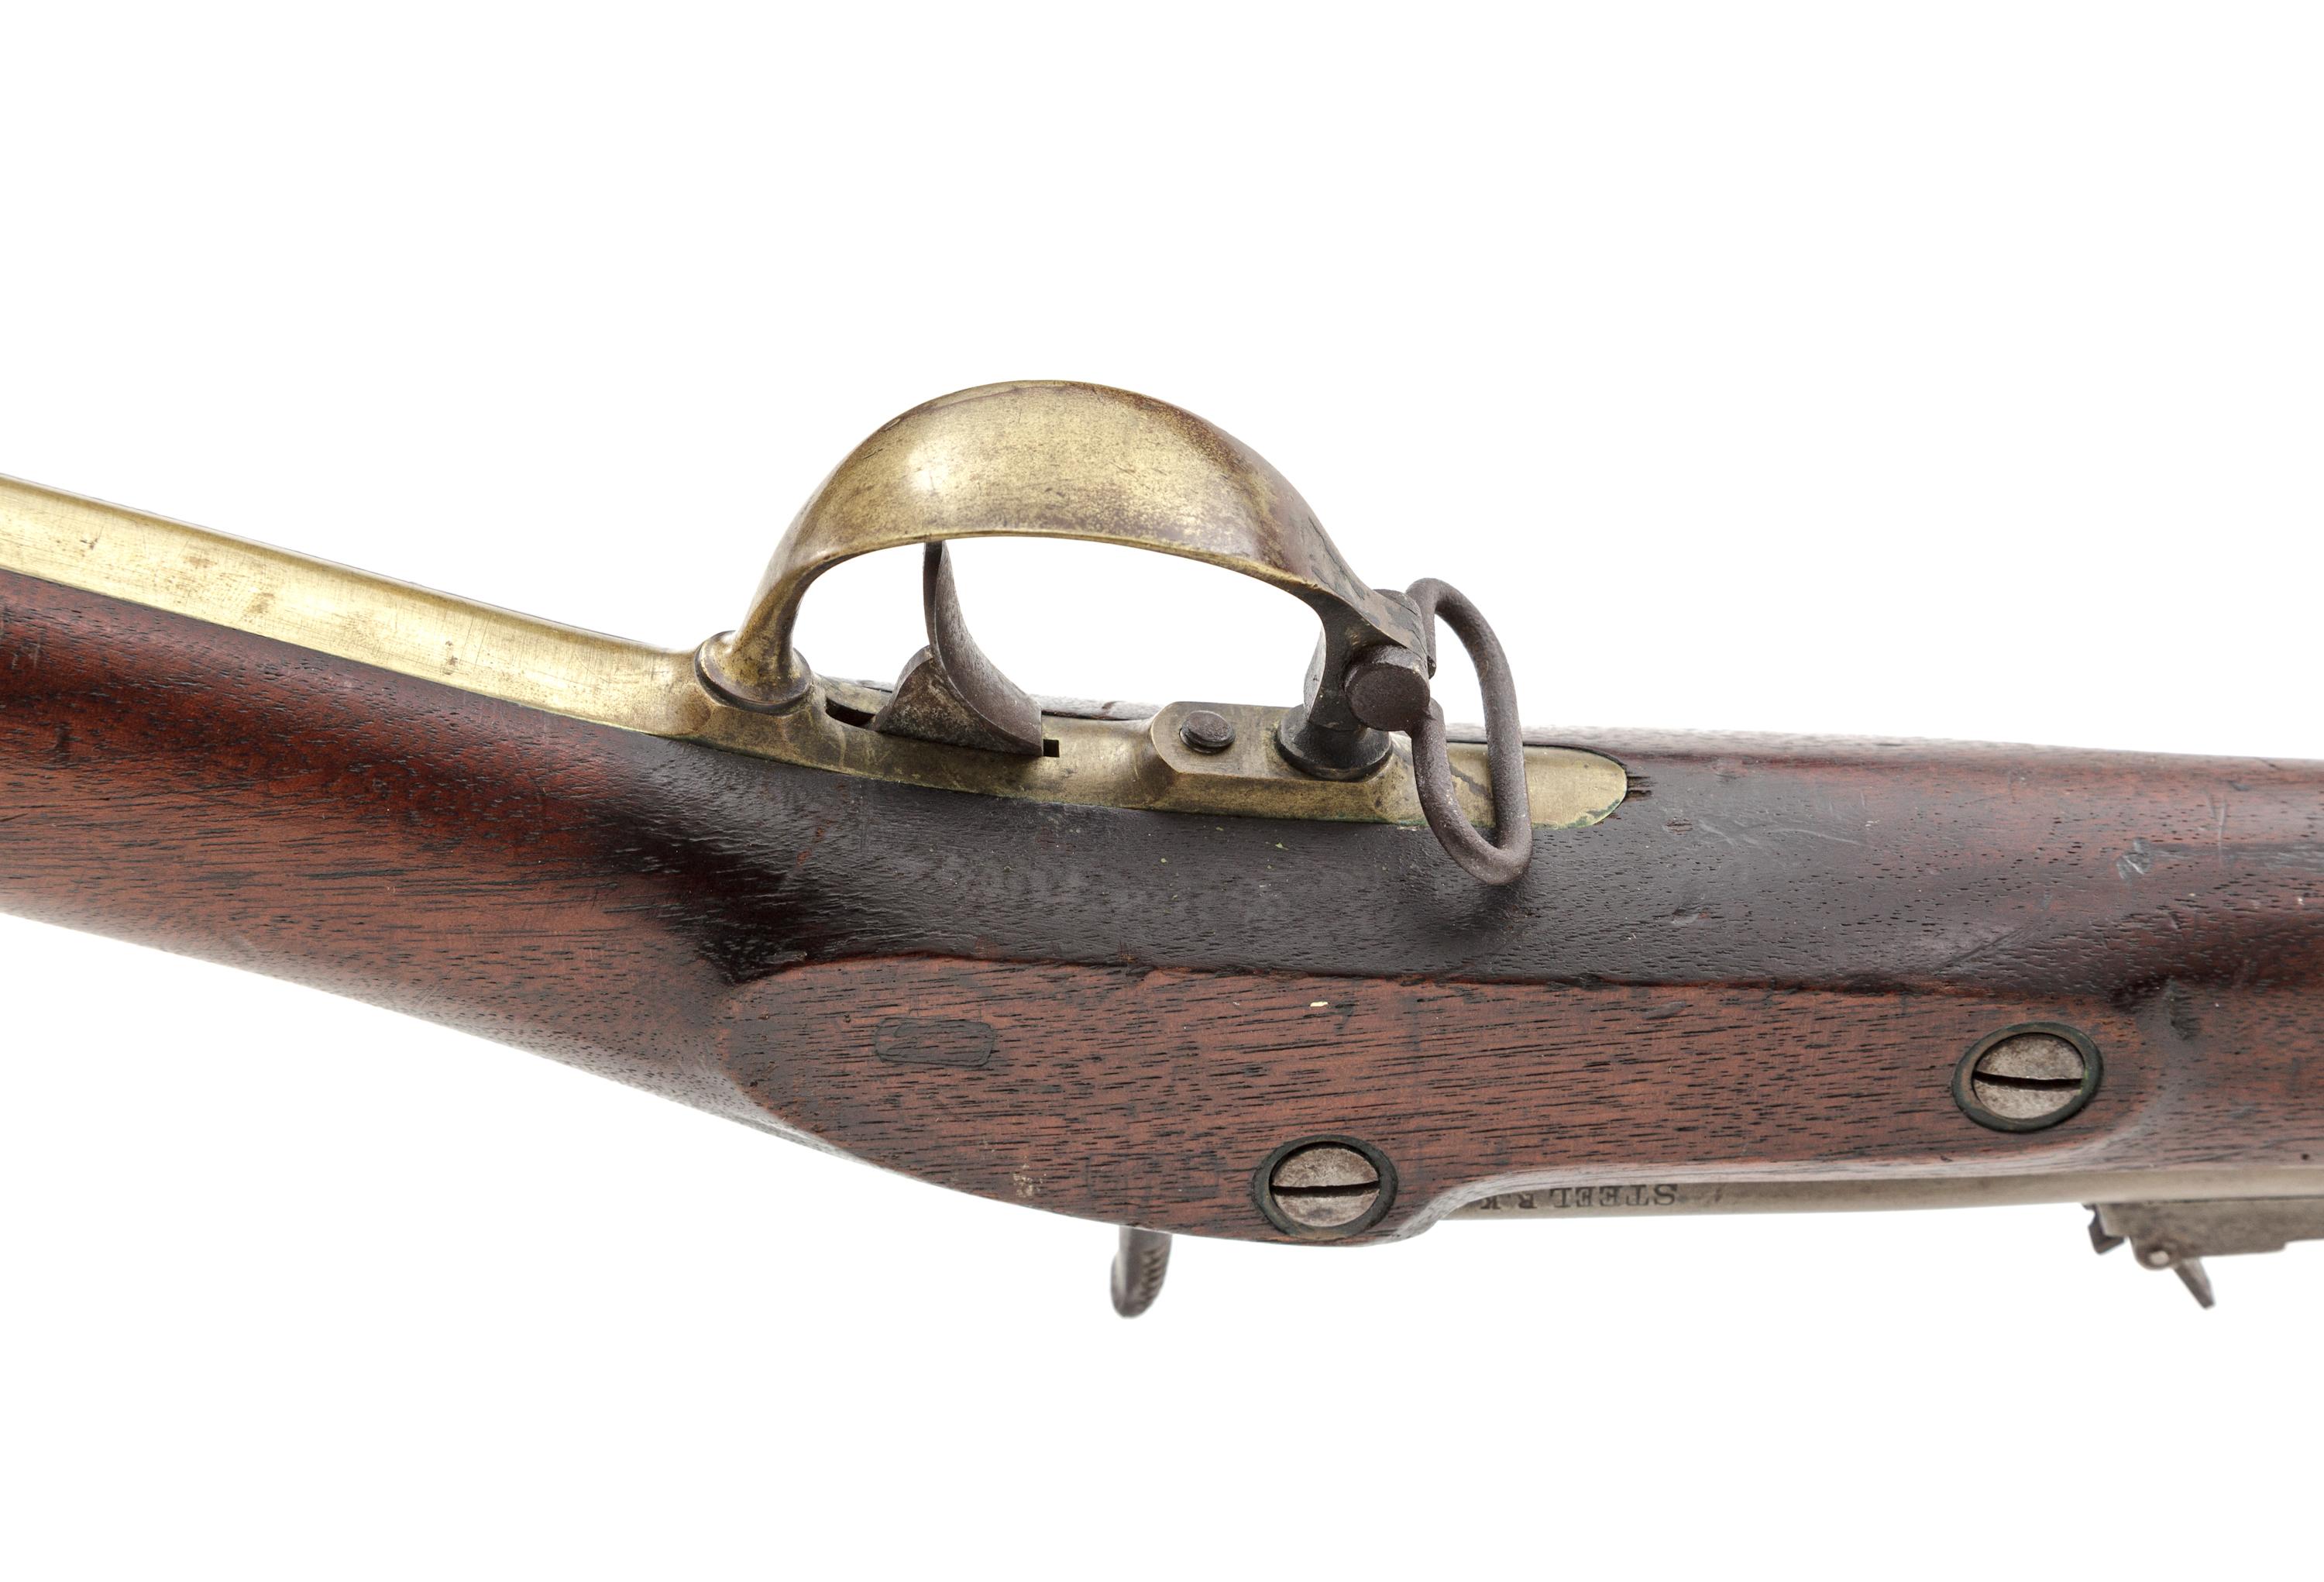 Remington M1863 Zouave Contract Perc. Rifle